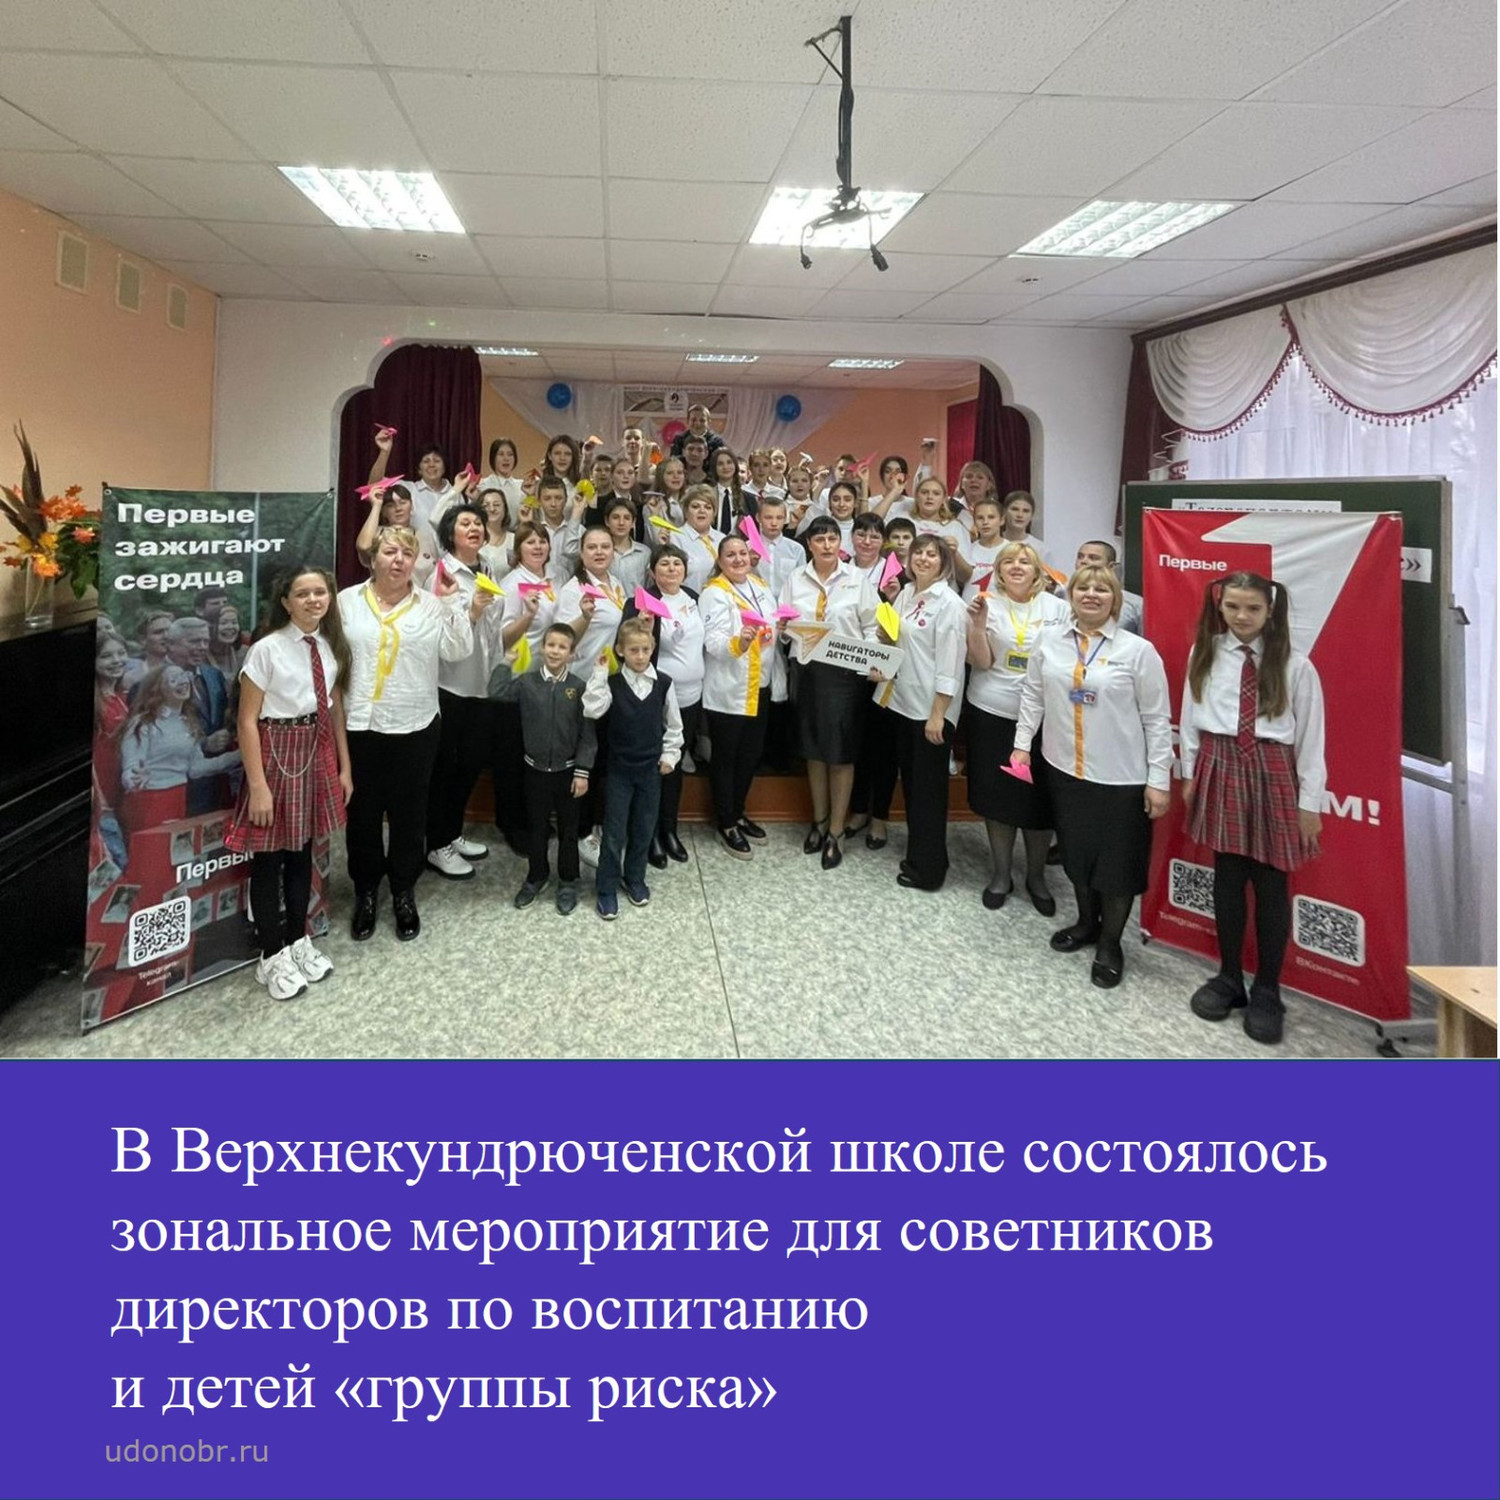 В Верхнекундрюченской школы состоялось зональное мероприятие для советников директоров по воспитаю и детей «группы риска»